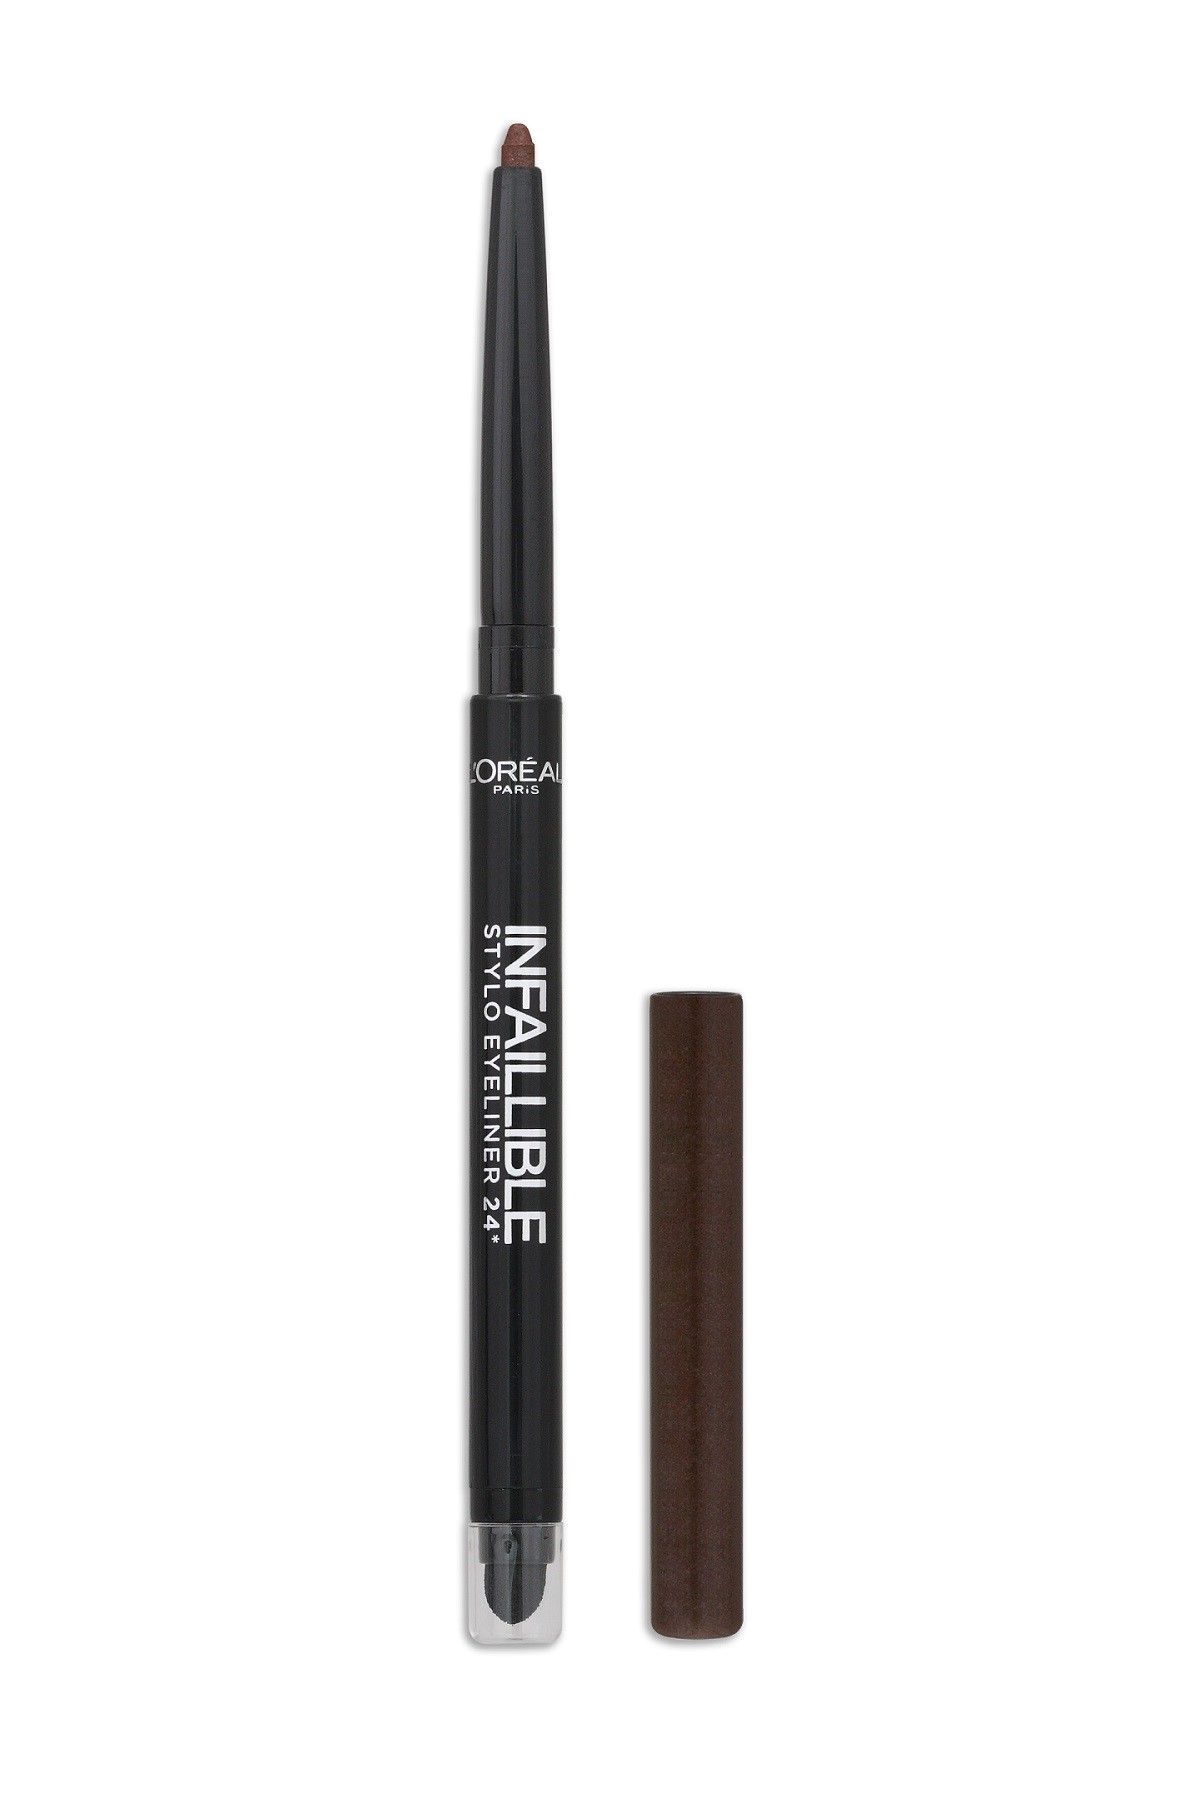 L'Oreal Paris Kahverengi Eyeliner - Infallible Stylo Eyeliner 16H 300 Chocolate Addict 3600521663516